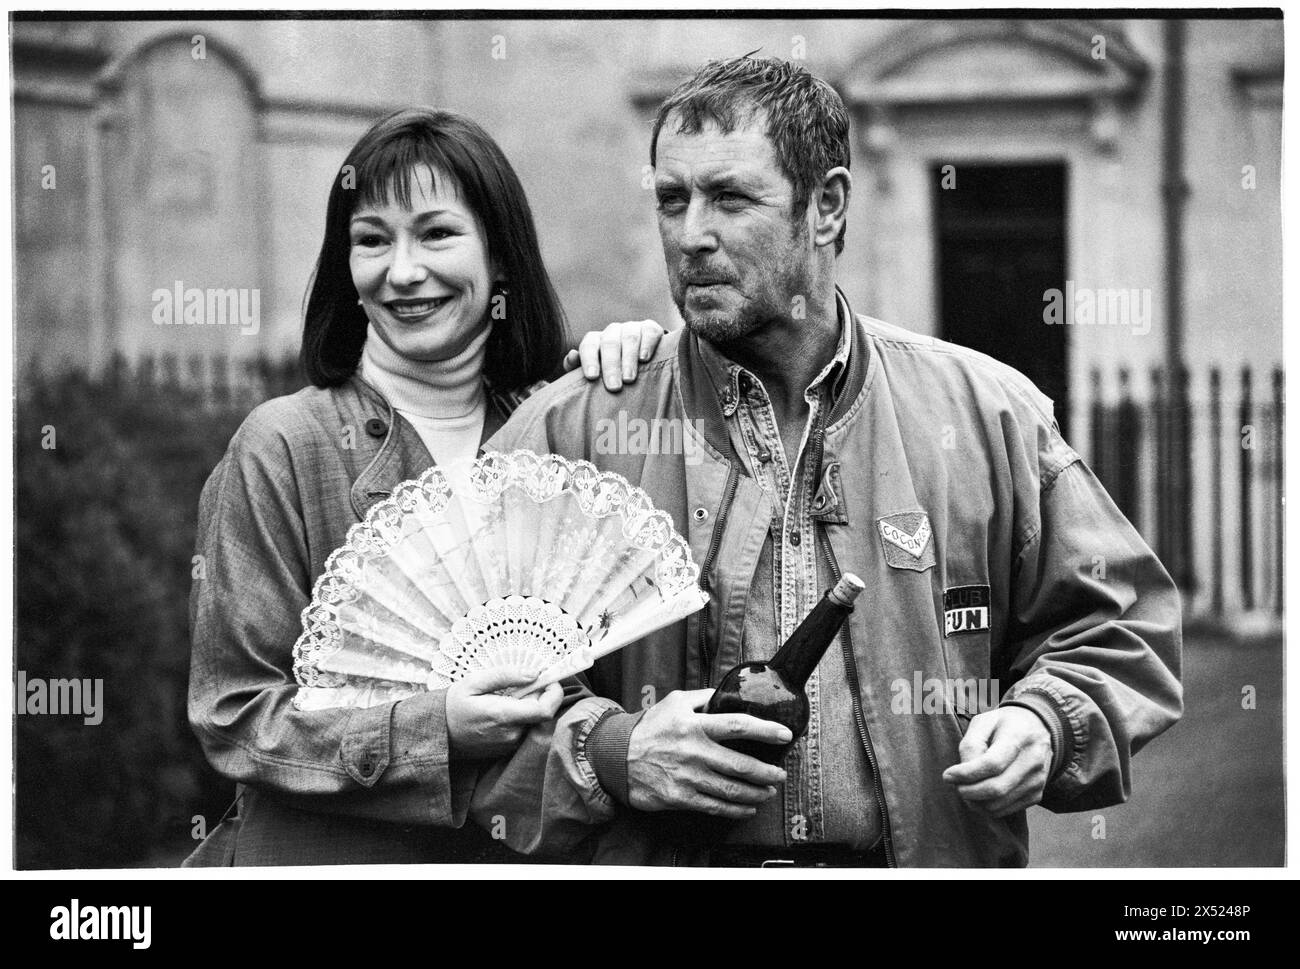 JOHN NETTLES, KATE O’TOOLE, BATH, 1994: Die Schauspieler John Nettles und Kate O’Toole promoten am 20. August 1994 im Theatre Royal in Bath, England. Dies war eine brachliegende Phase in seiner Karriere zwischen den Morden von Bergerac und Midsomer. Bild: Rob Watkins. INFO: John Nettles, ein britischer Schauspieler, der am 11. Oktober 1943 in St Austell in Cornwall geboren wurde, erlangte durch seine Rollen in Fernsehdramen wie „Bergerac“ und „Midsomer Murders“ Bekanntheit. Seine vielseitigen Auftritte und seine kommandierende Präsenz haben ihn zu einer beliebten Figur im britischen Fernsehen gemacht. Stockfoto